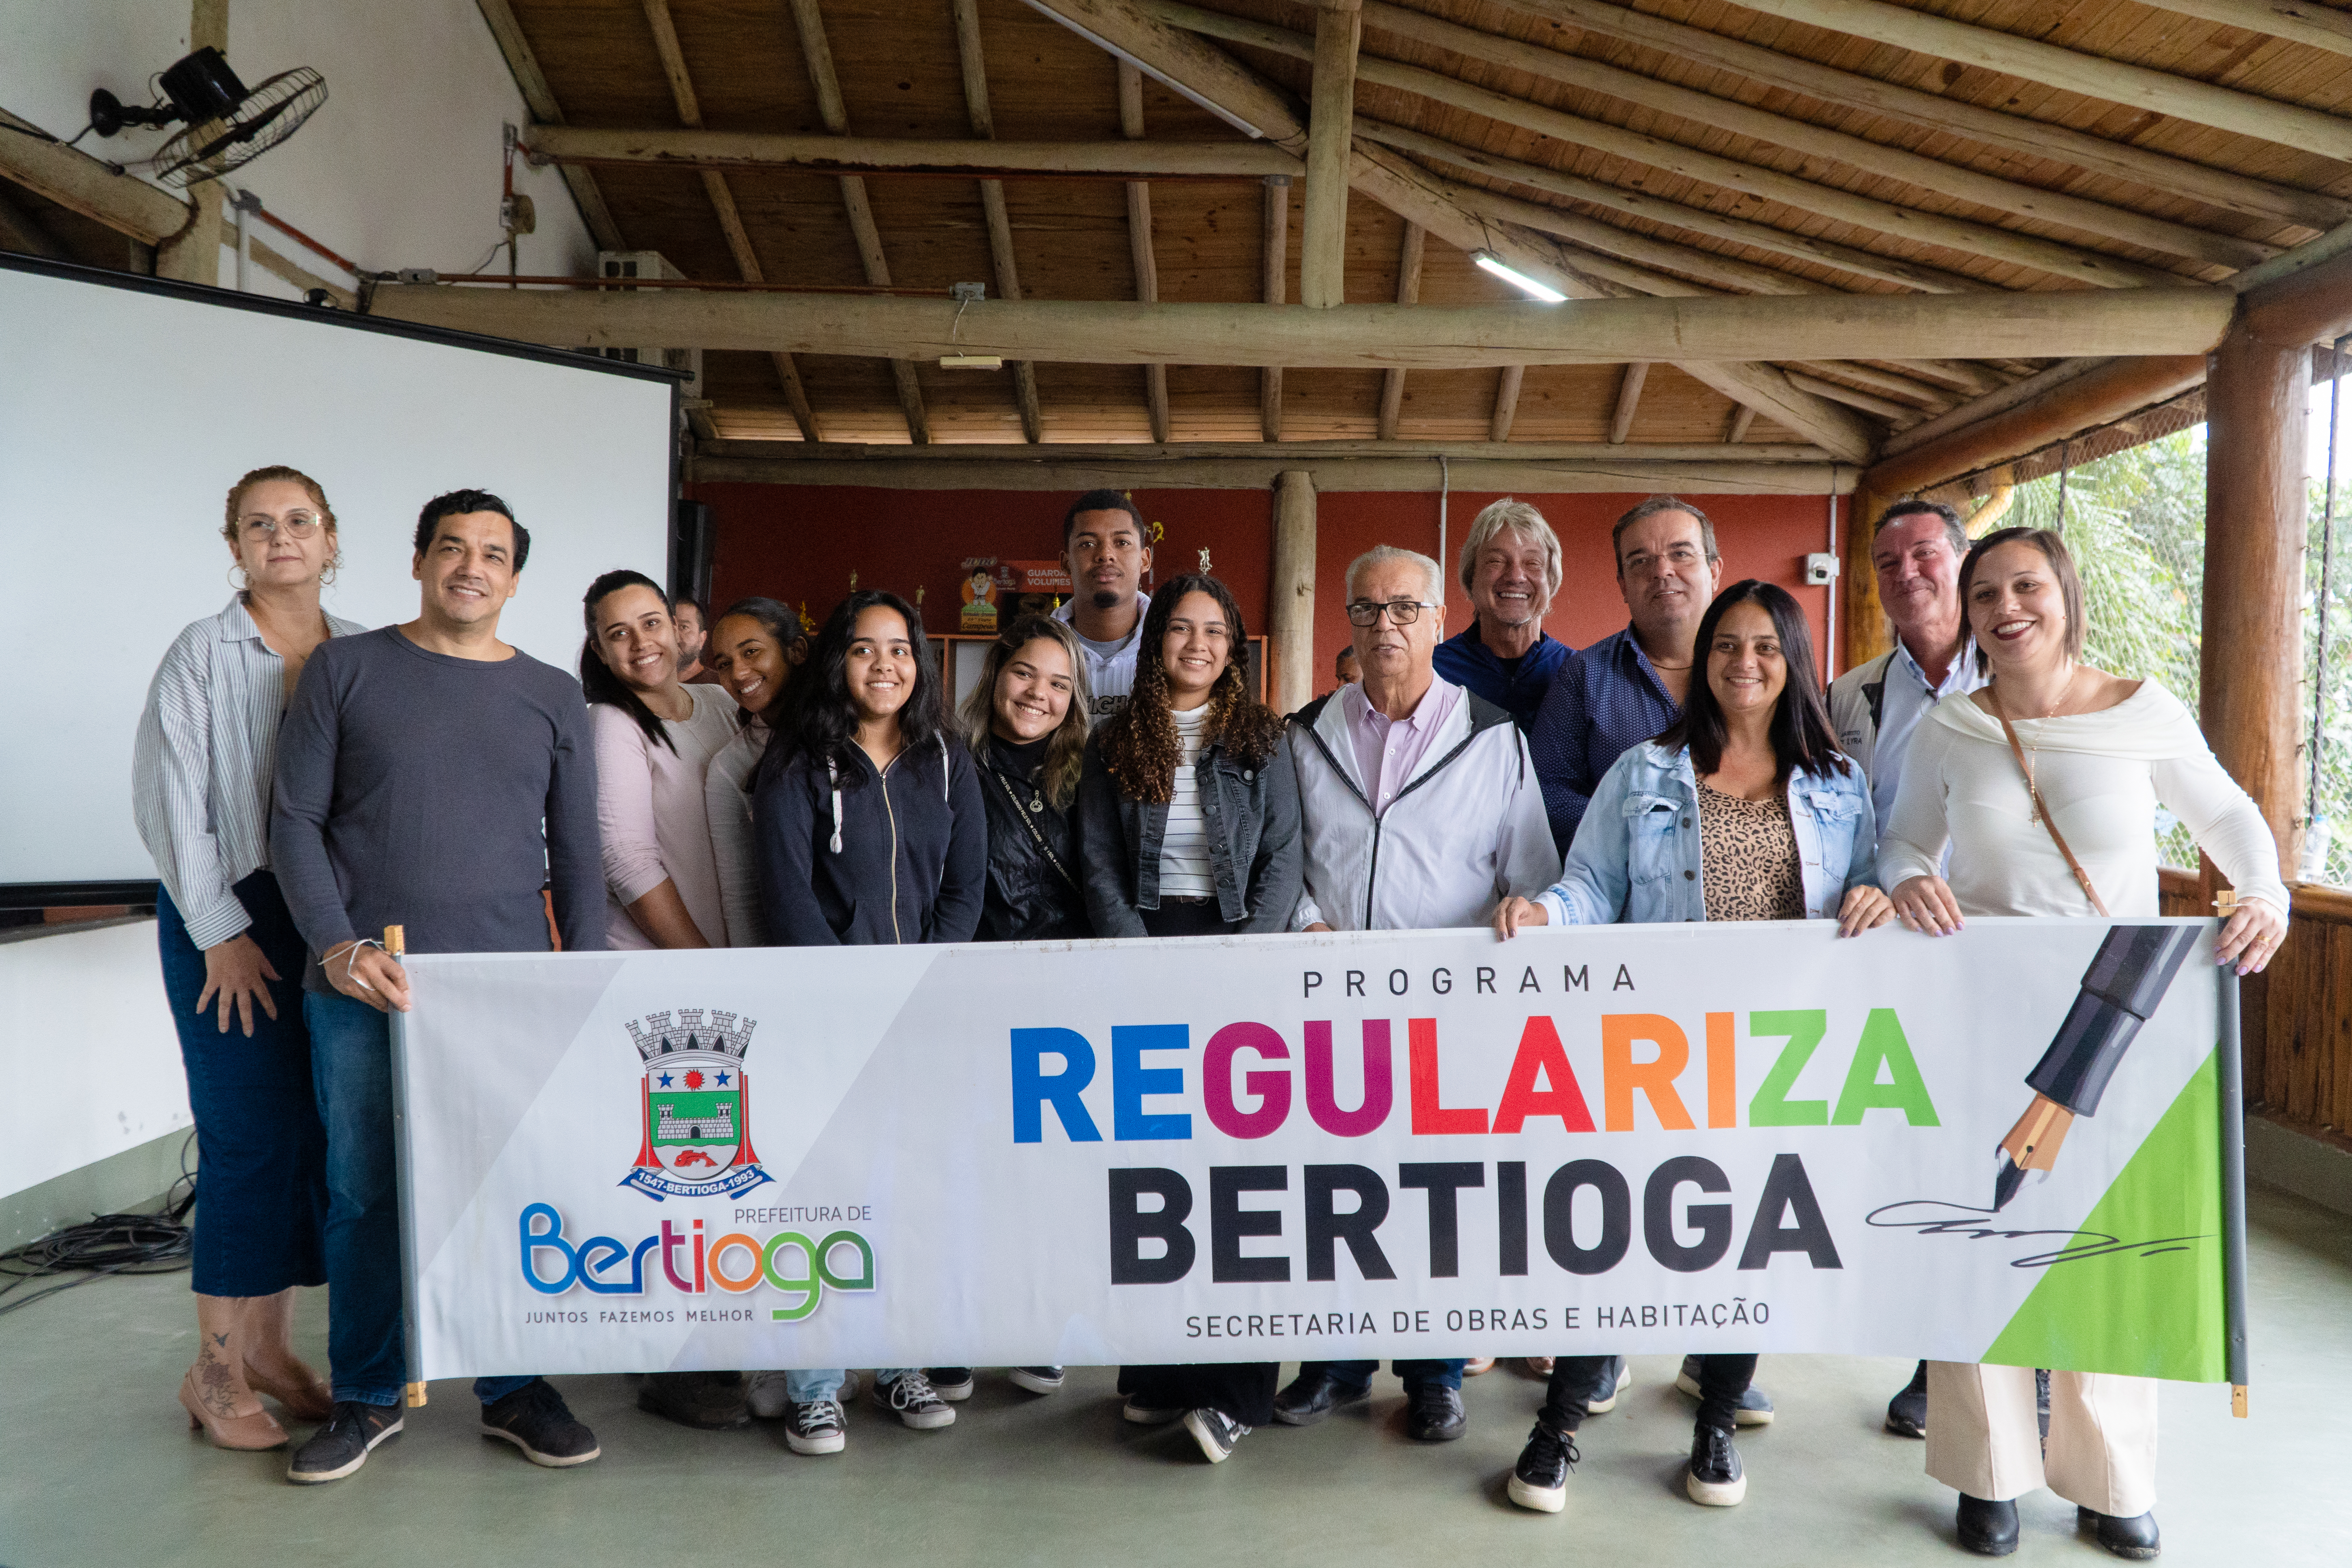 Moradores do Boraceia recebem títulos de legitimação fundiária, em Bertioga (SP)